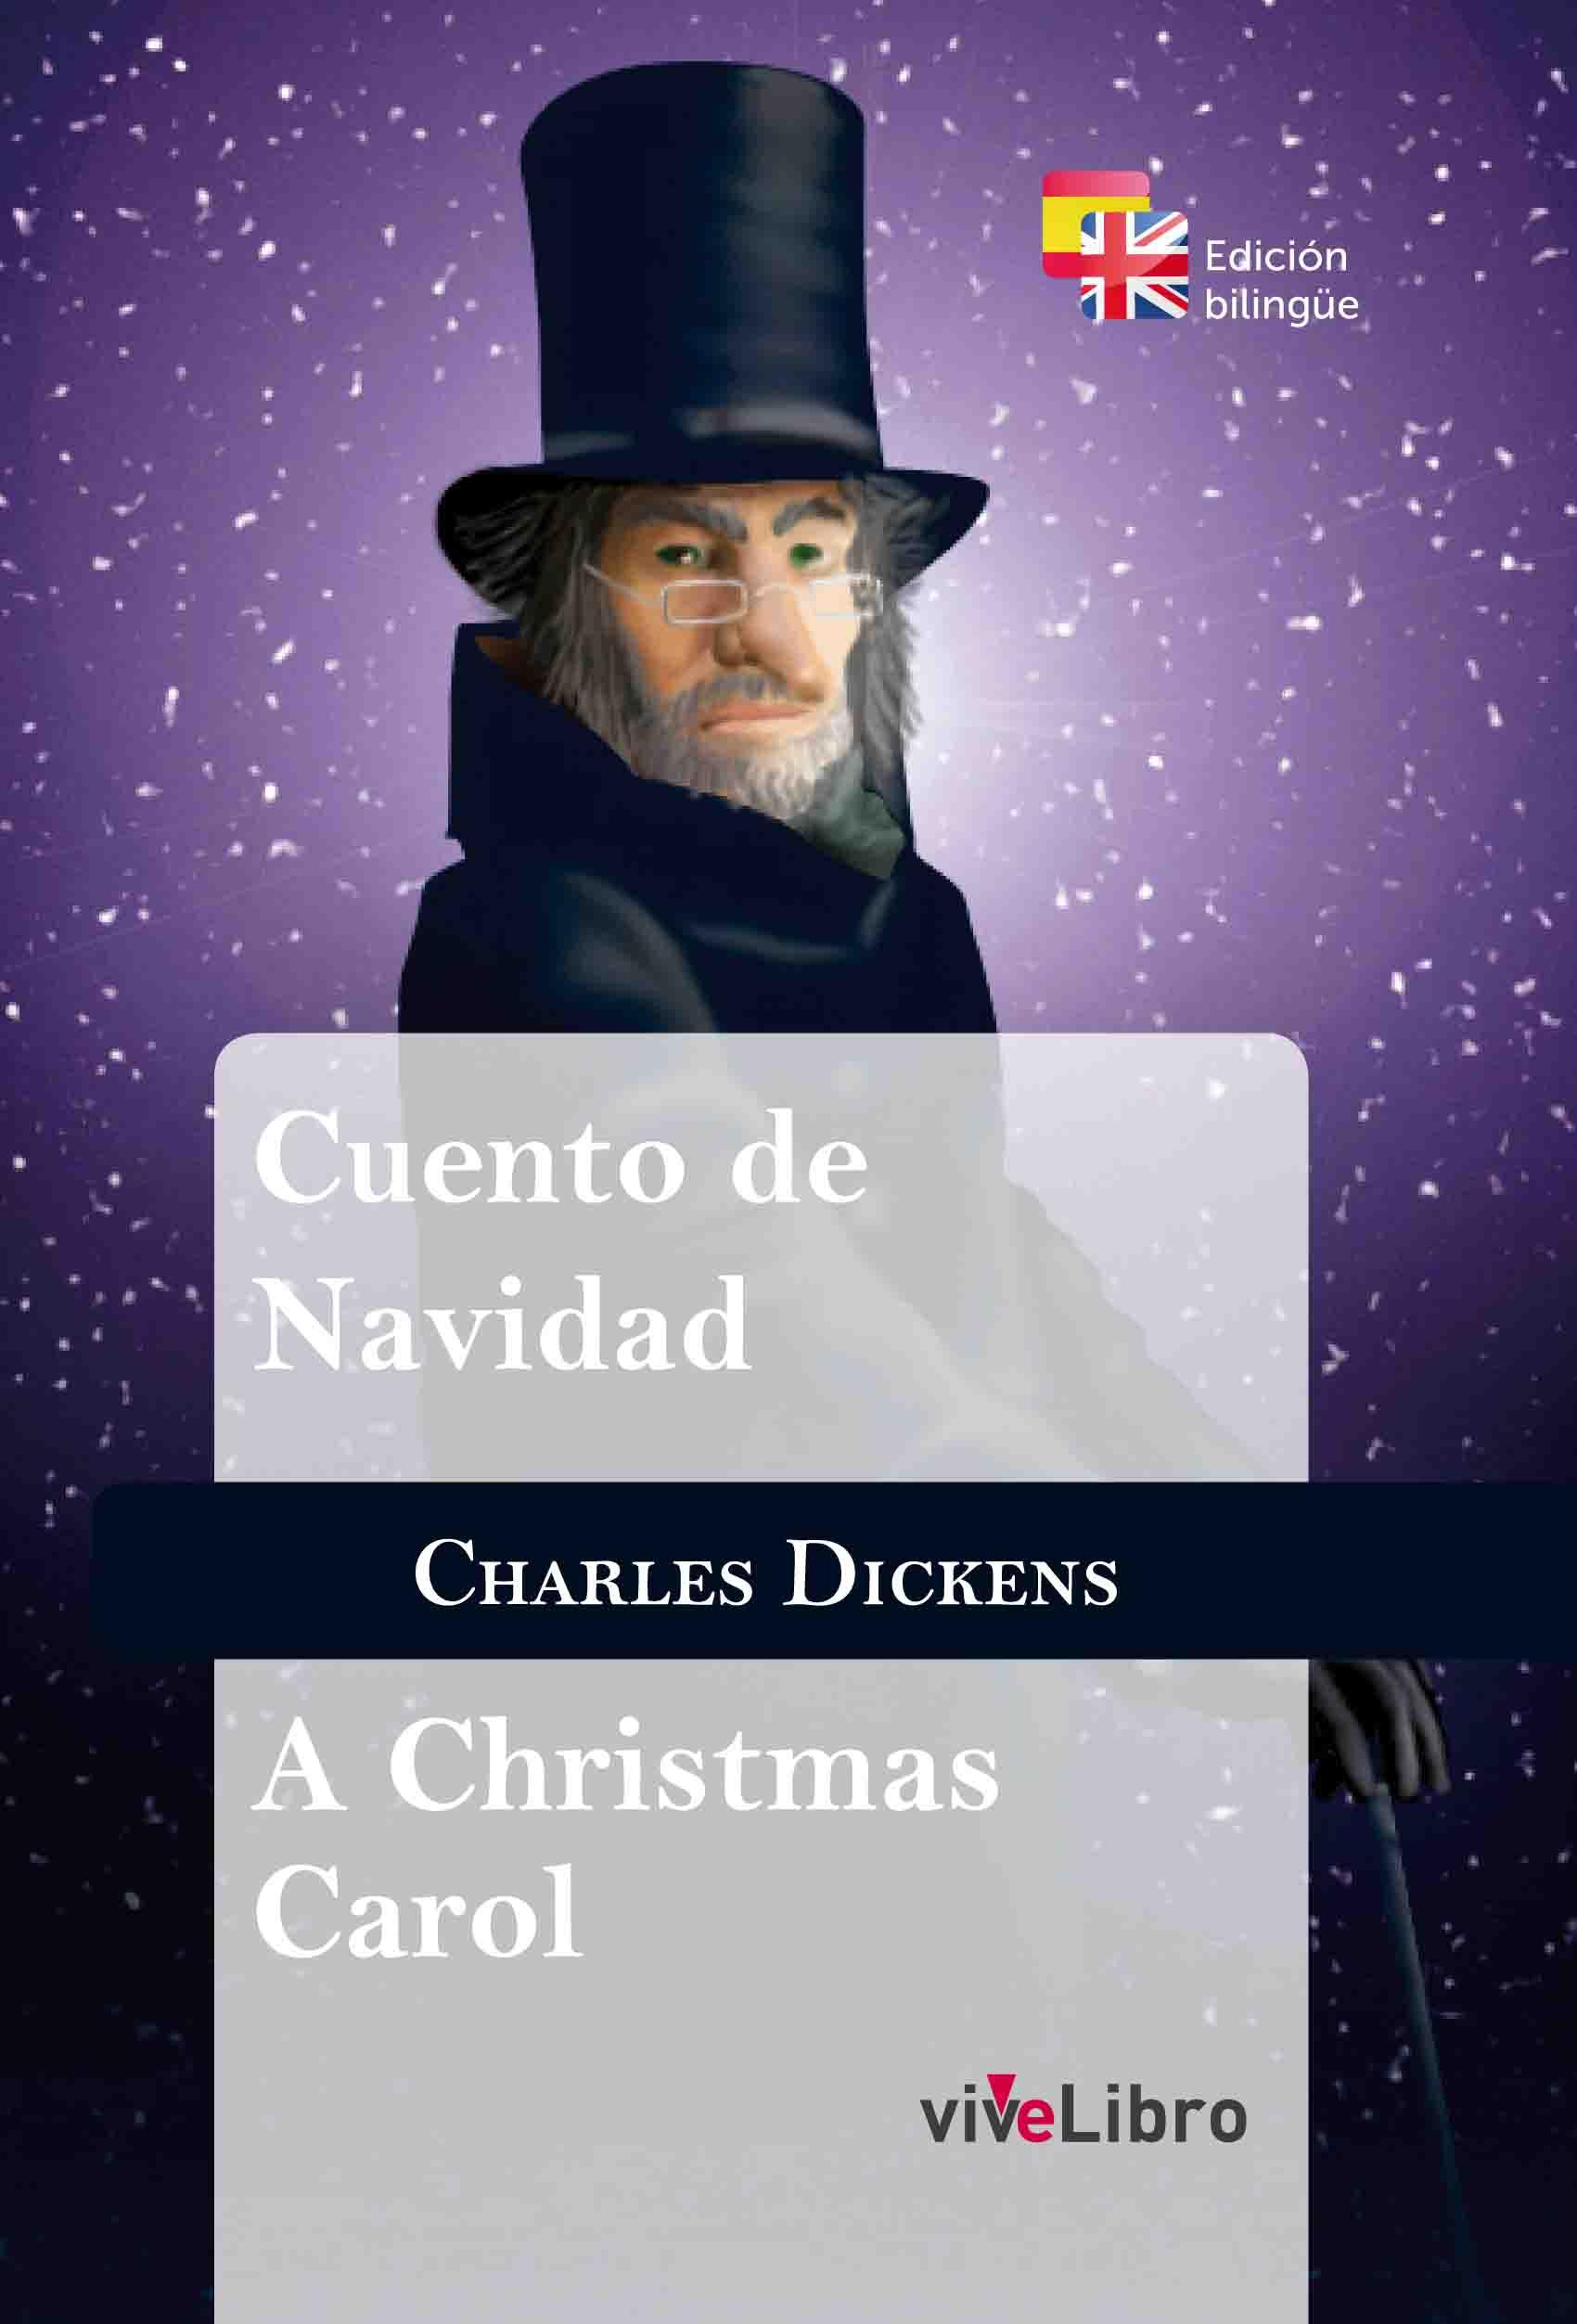 Cuento de Navidad, de Charles Dickens